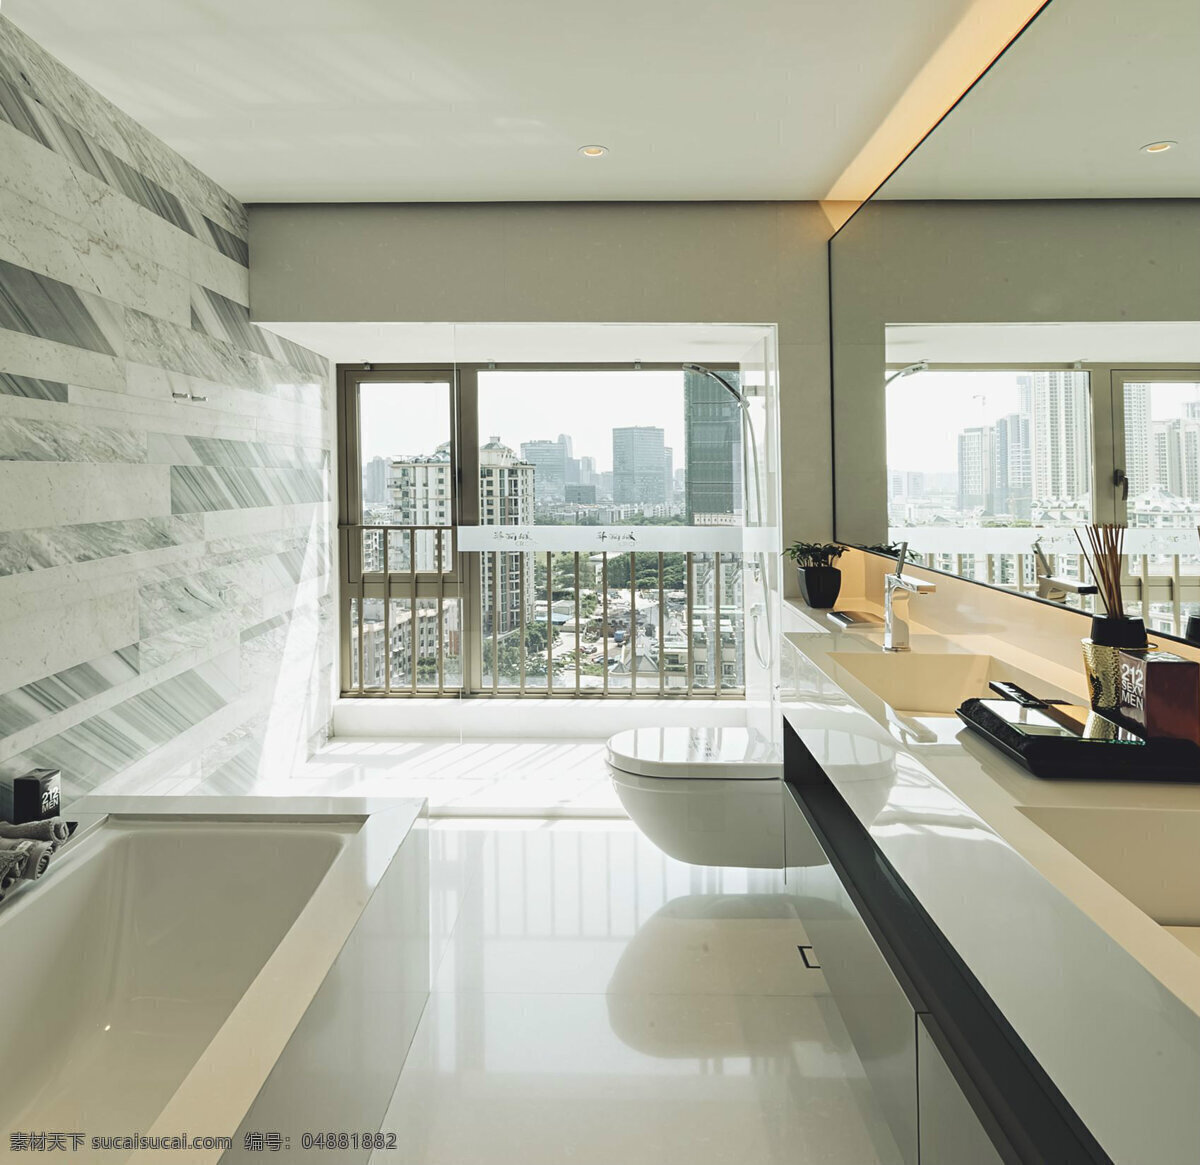 现代 时尚 客厅 拼 色 背景 墙 室内装修 效果图 瓷砖地板 客厅装修 白色亮面桌面 白色天花板